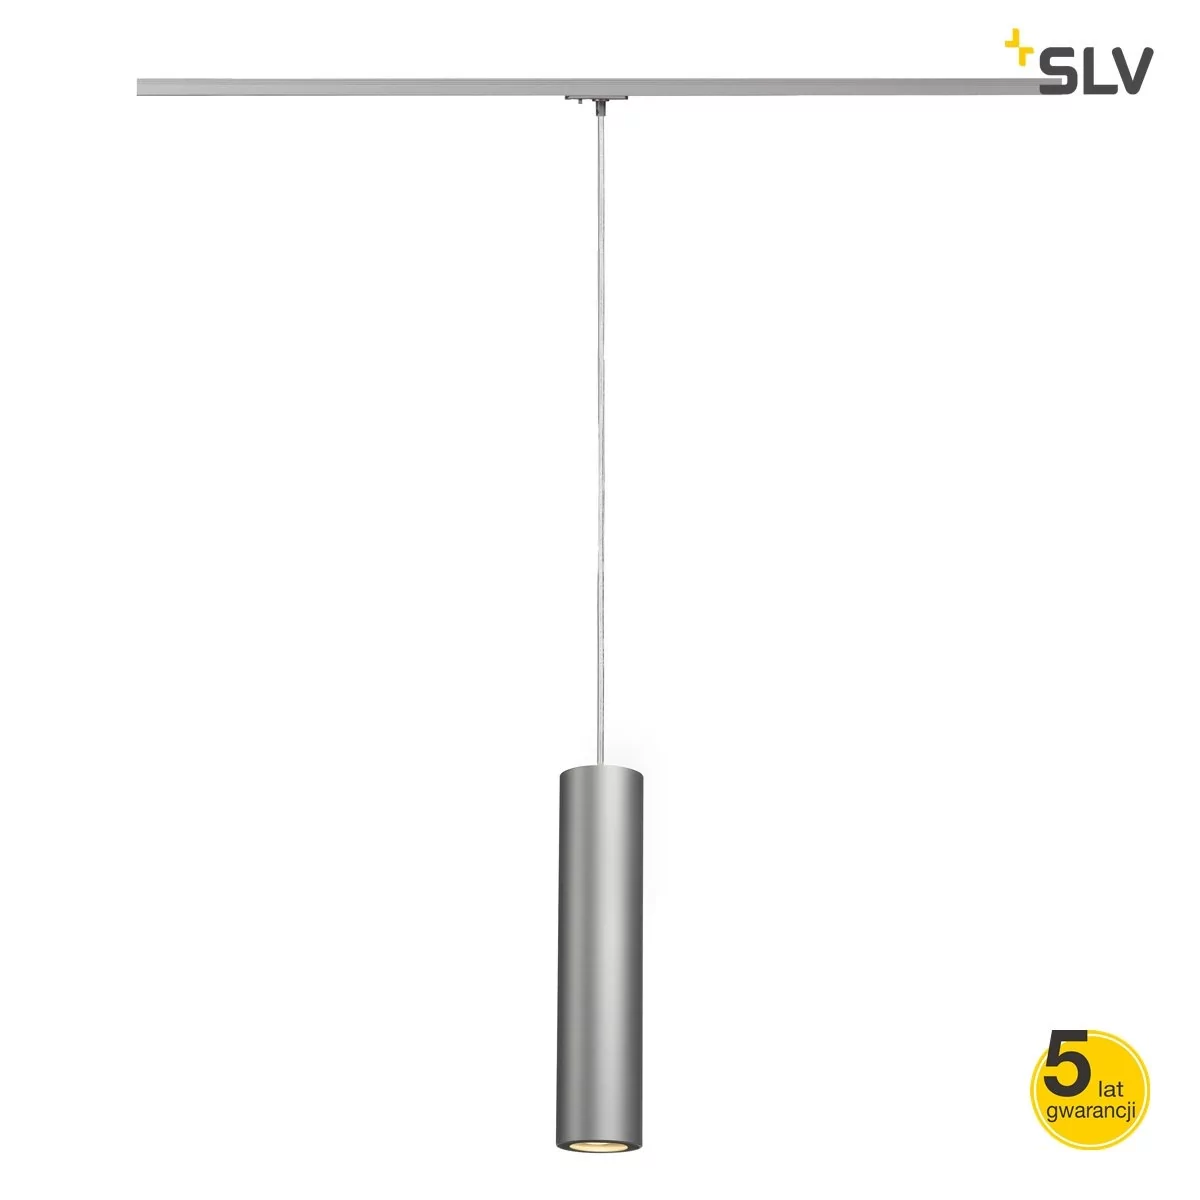 SLV Lampa systemu szynowego jednofazowego 143964 1fazowa LED GU10 230 V 50 W srebrno-szary